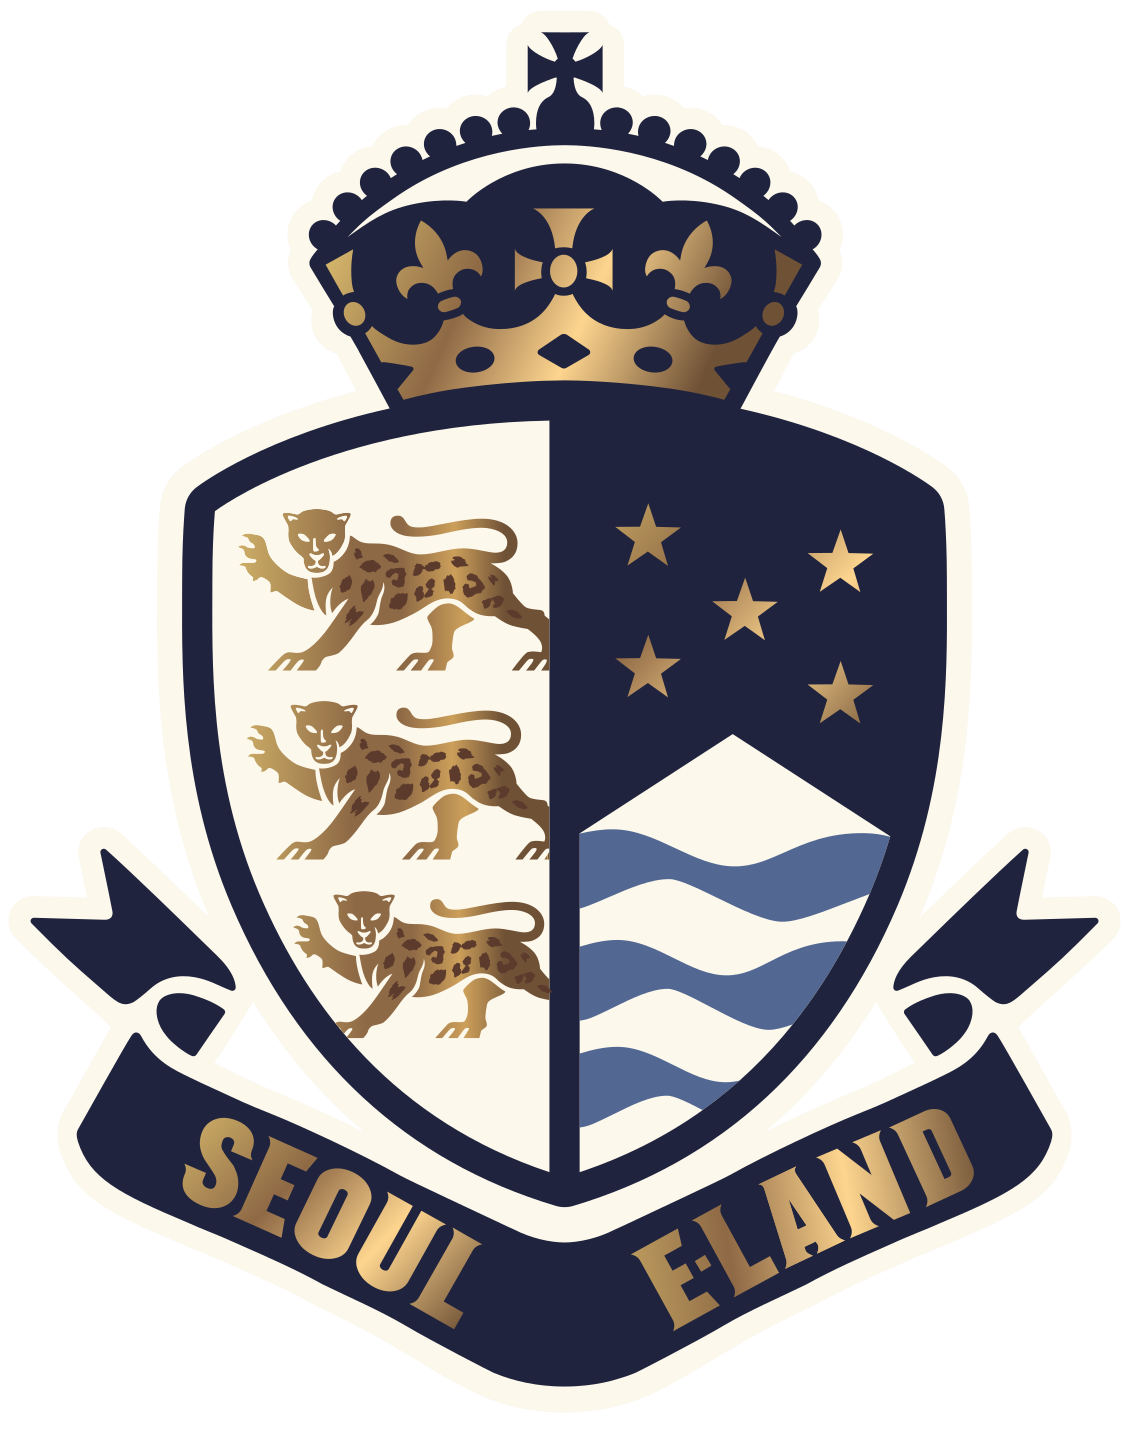 파일:external/s20.postimg.org/seoul_Eland_logo.png